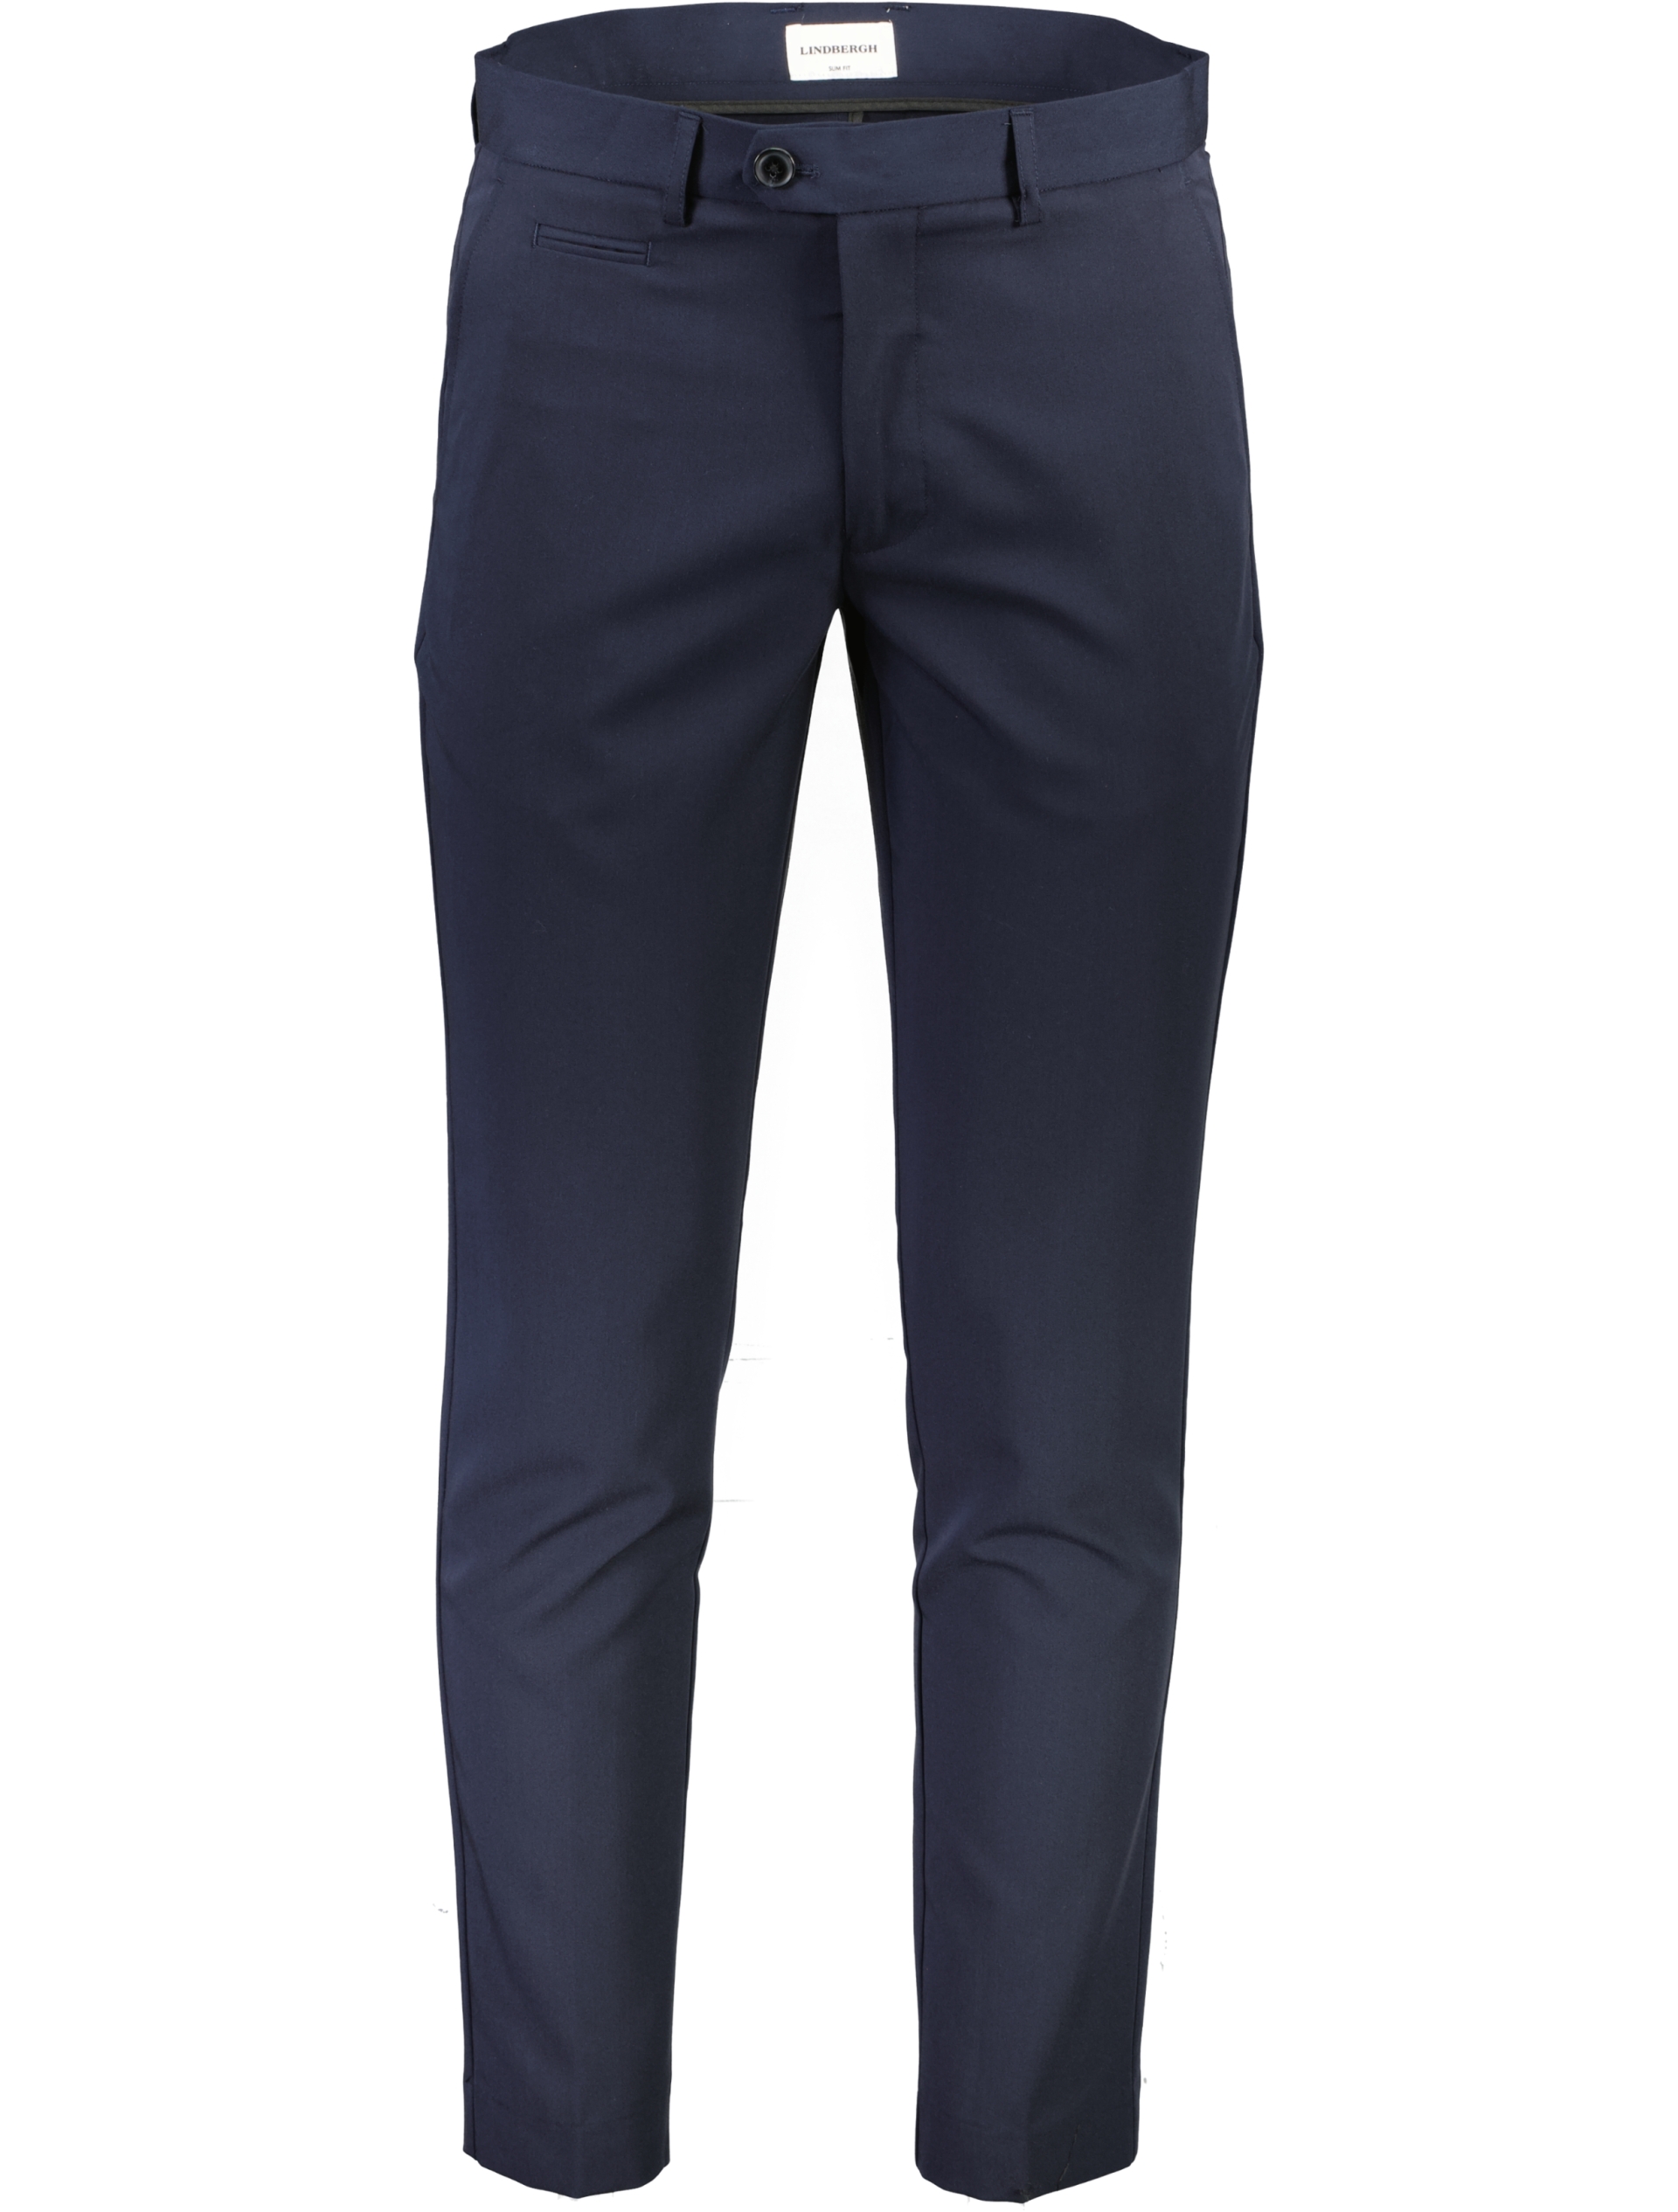 Lindbergh Club pants blue / navy